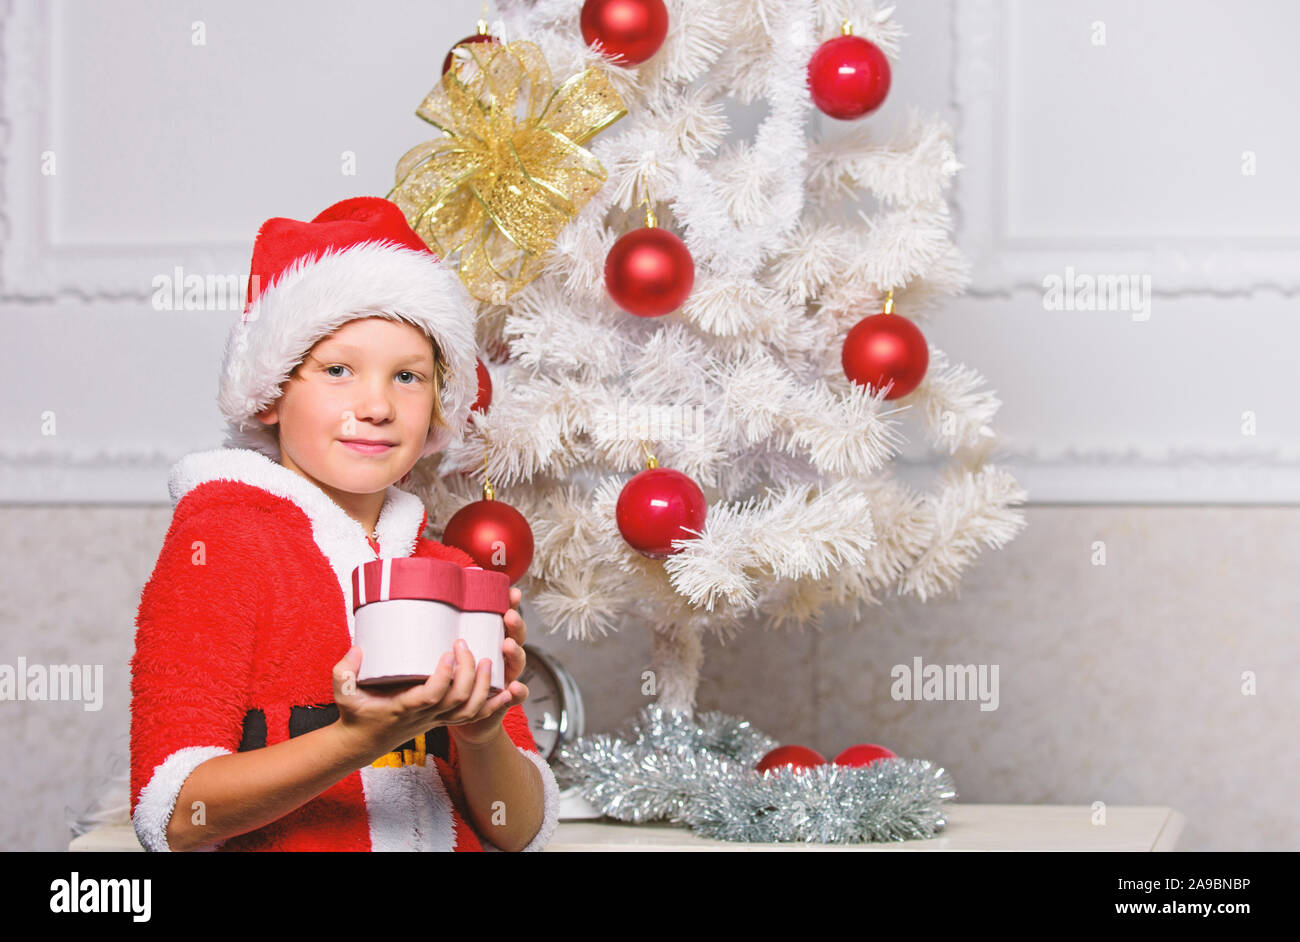 Albero di natale idee per i bambini. Boy kid vestiti come santa con Red Hat  tenere confezione regalo vicino albero di natale. Christmas Santa Claus  costume per bambino. Festa di Natale con